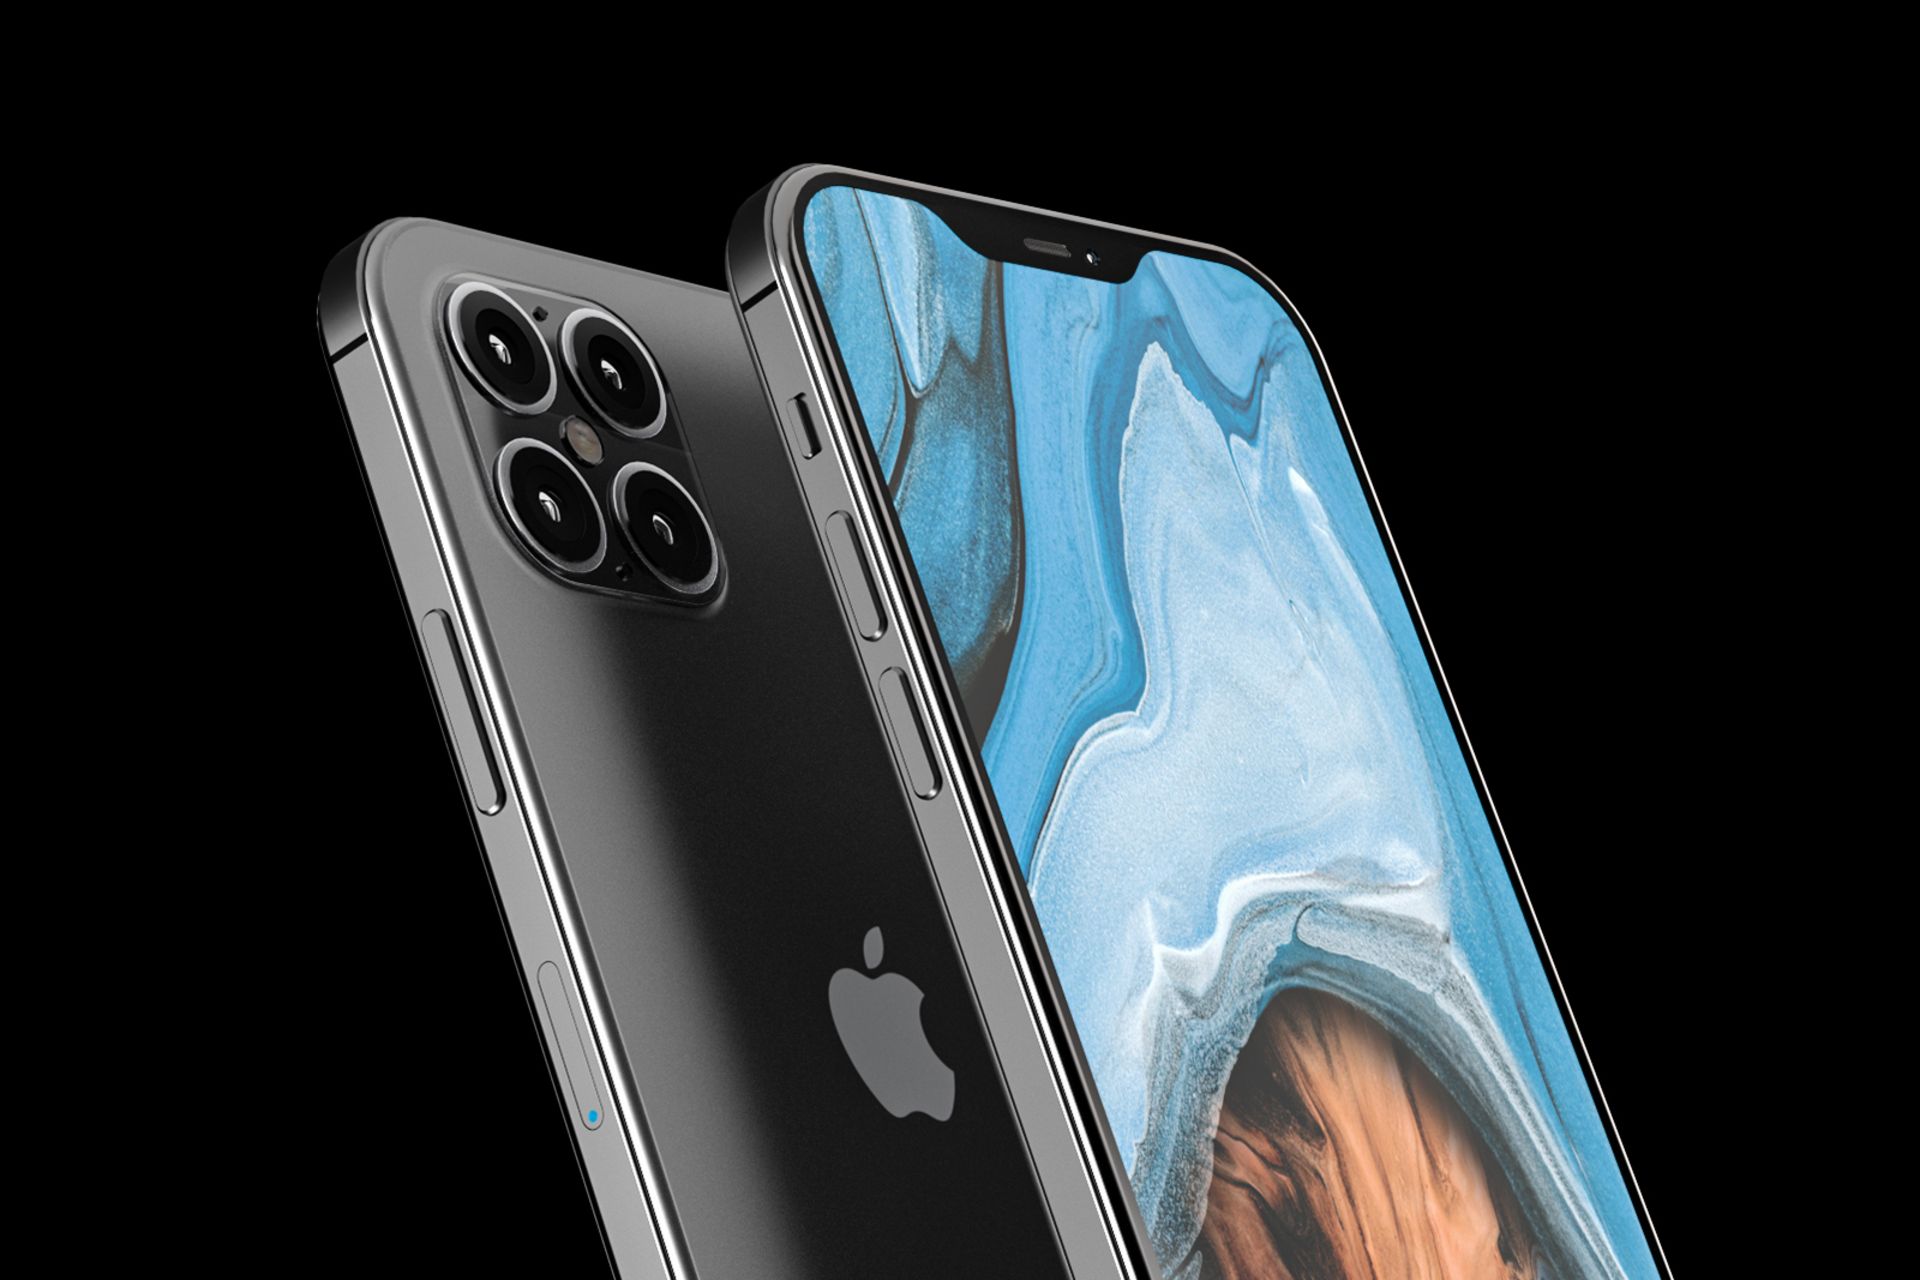 مرجع متخصصين ايران آيفون 12 اپل / Apple iPhone 12 / آيفون 2020 / iPhone 2020